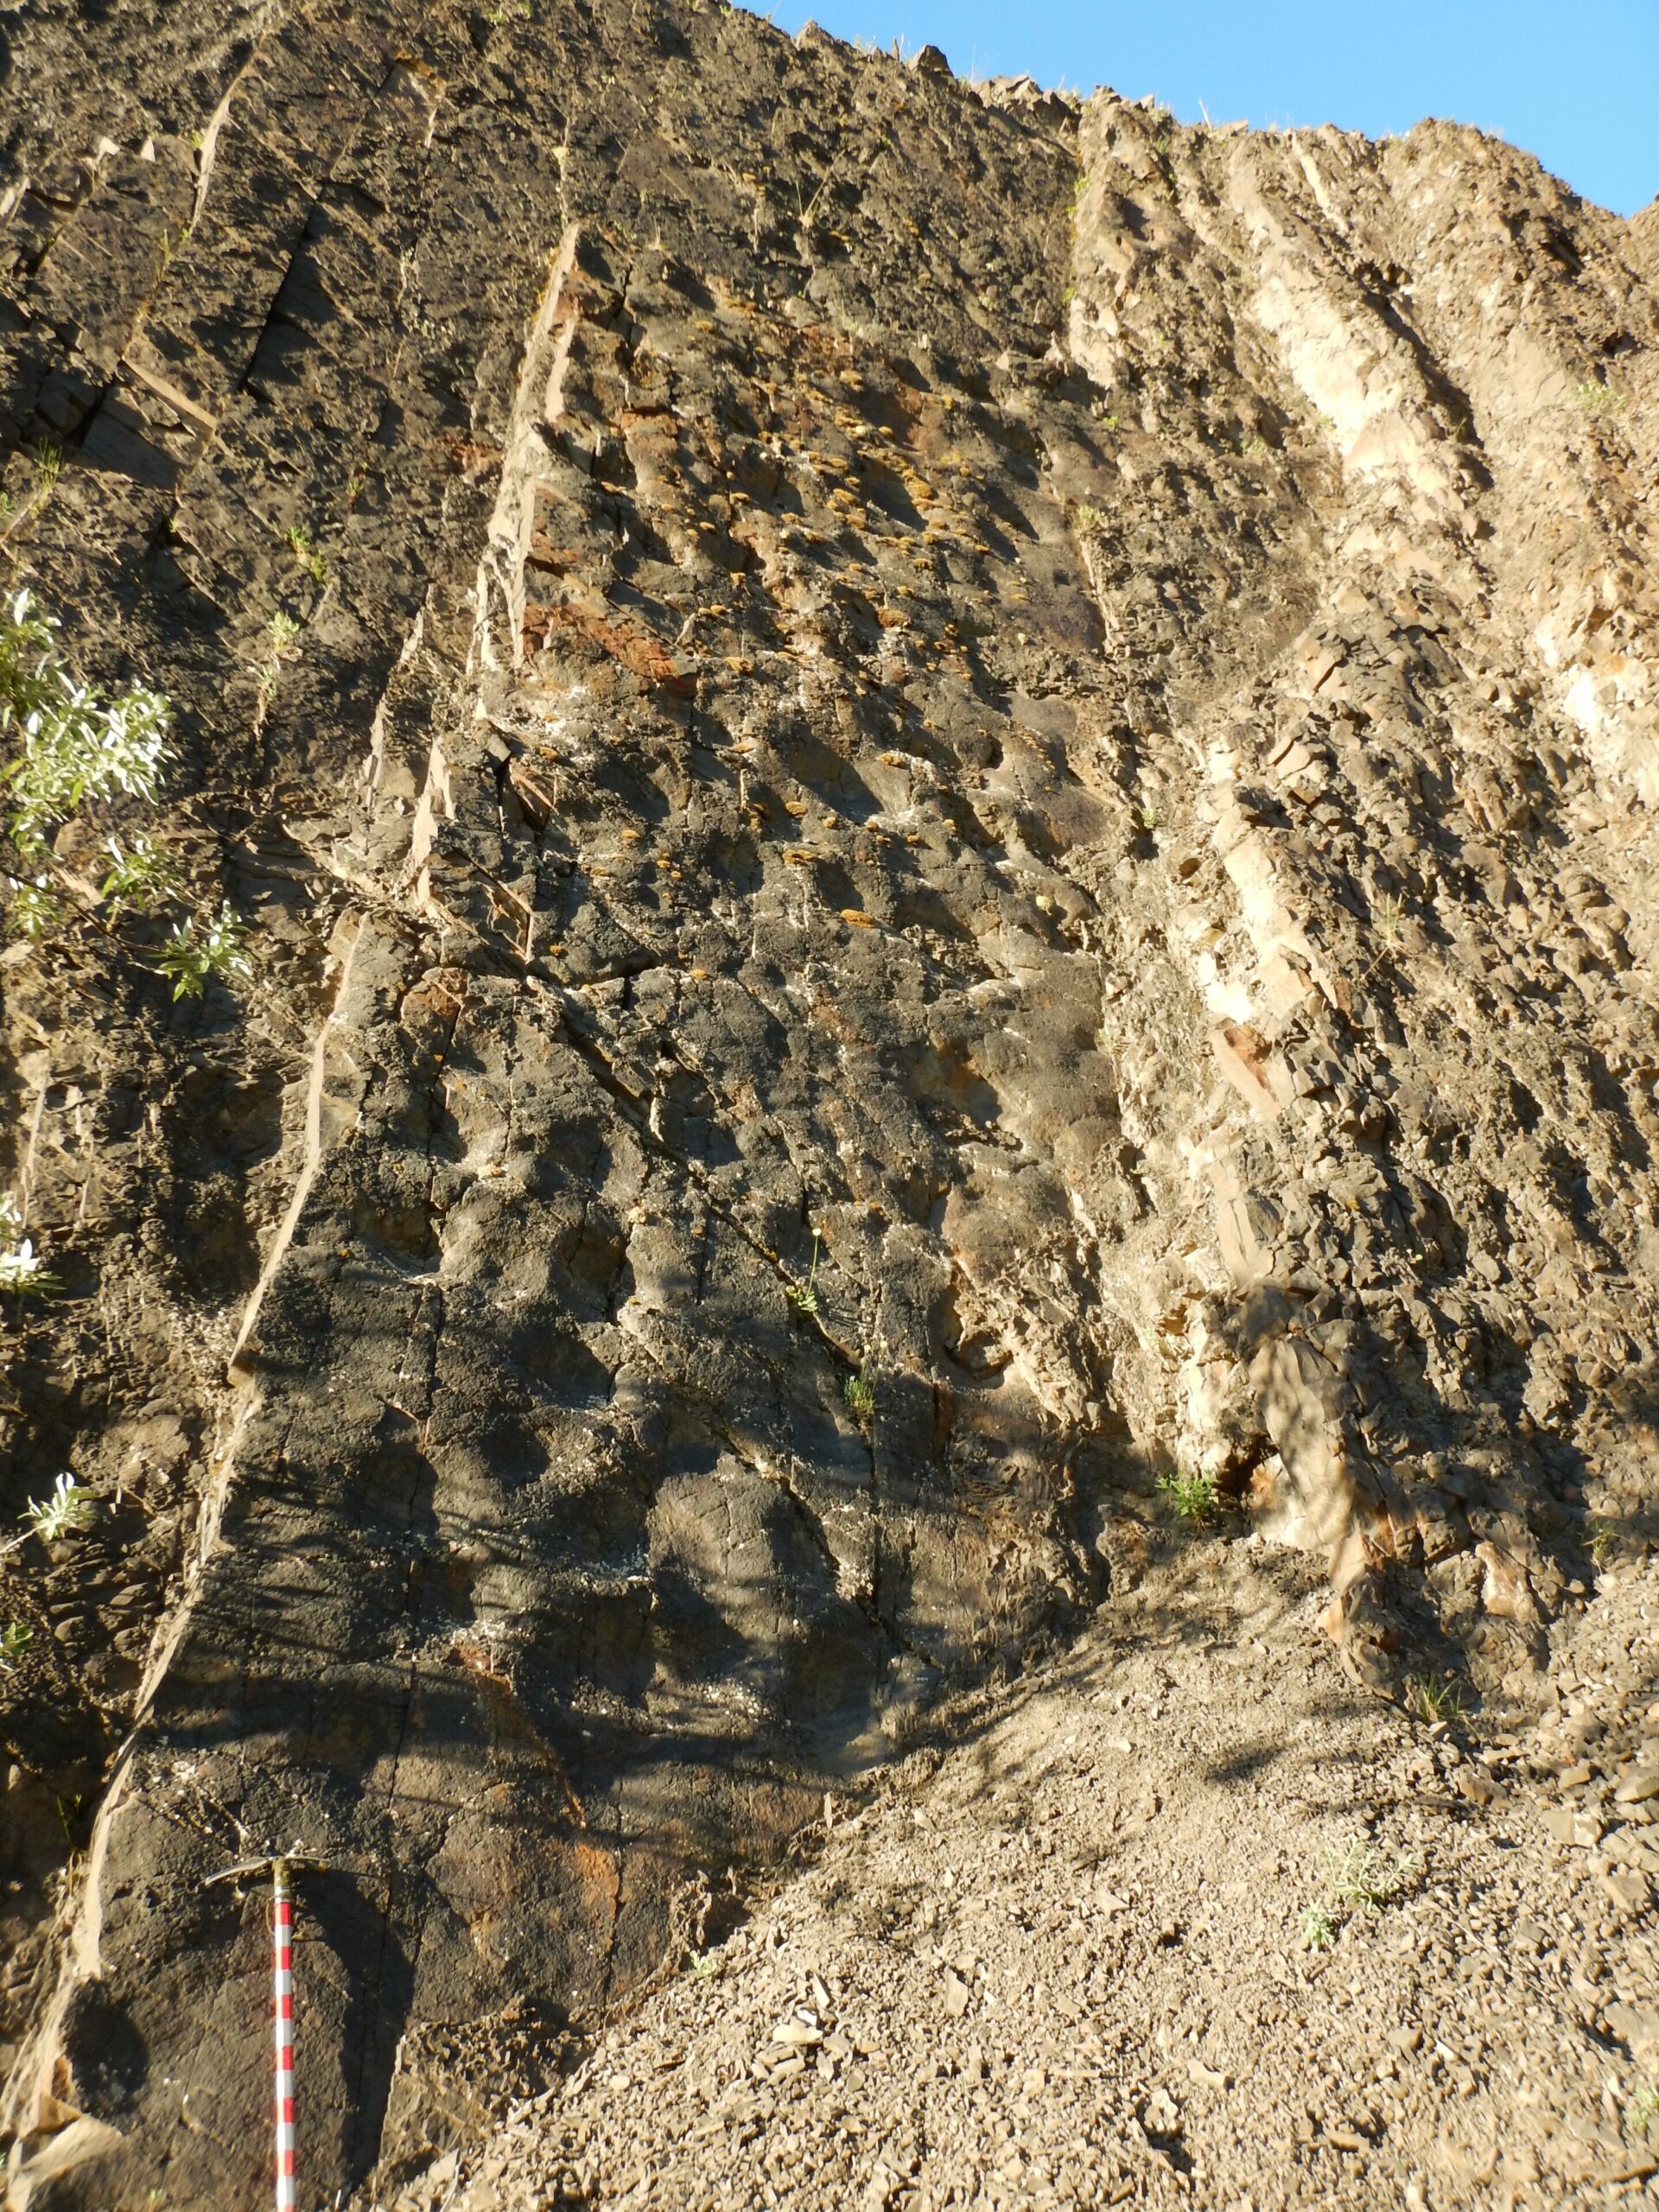 Nærbillede på den ene væg viser adskillige fordybninger af hadrosaur-fodspor. Isøksen nederst til venstre i rammen er cirka 3 fod lang, for skala.